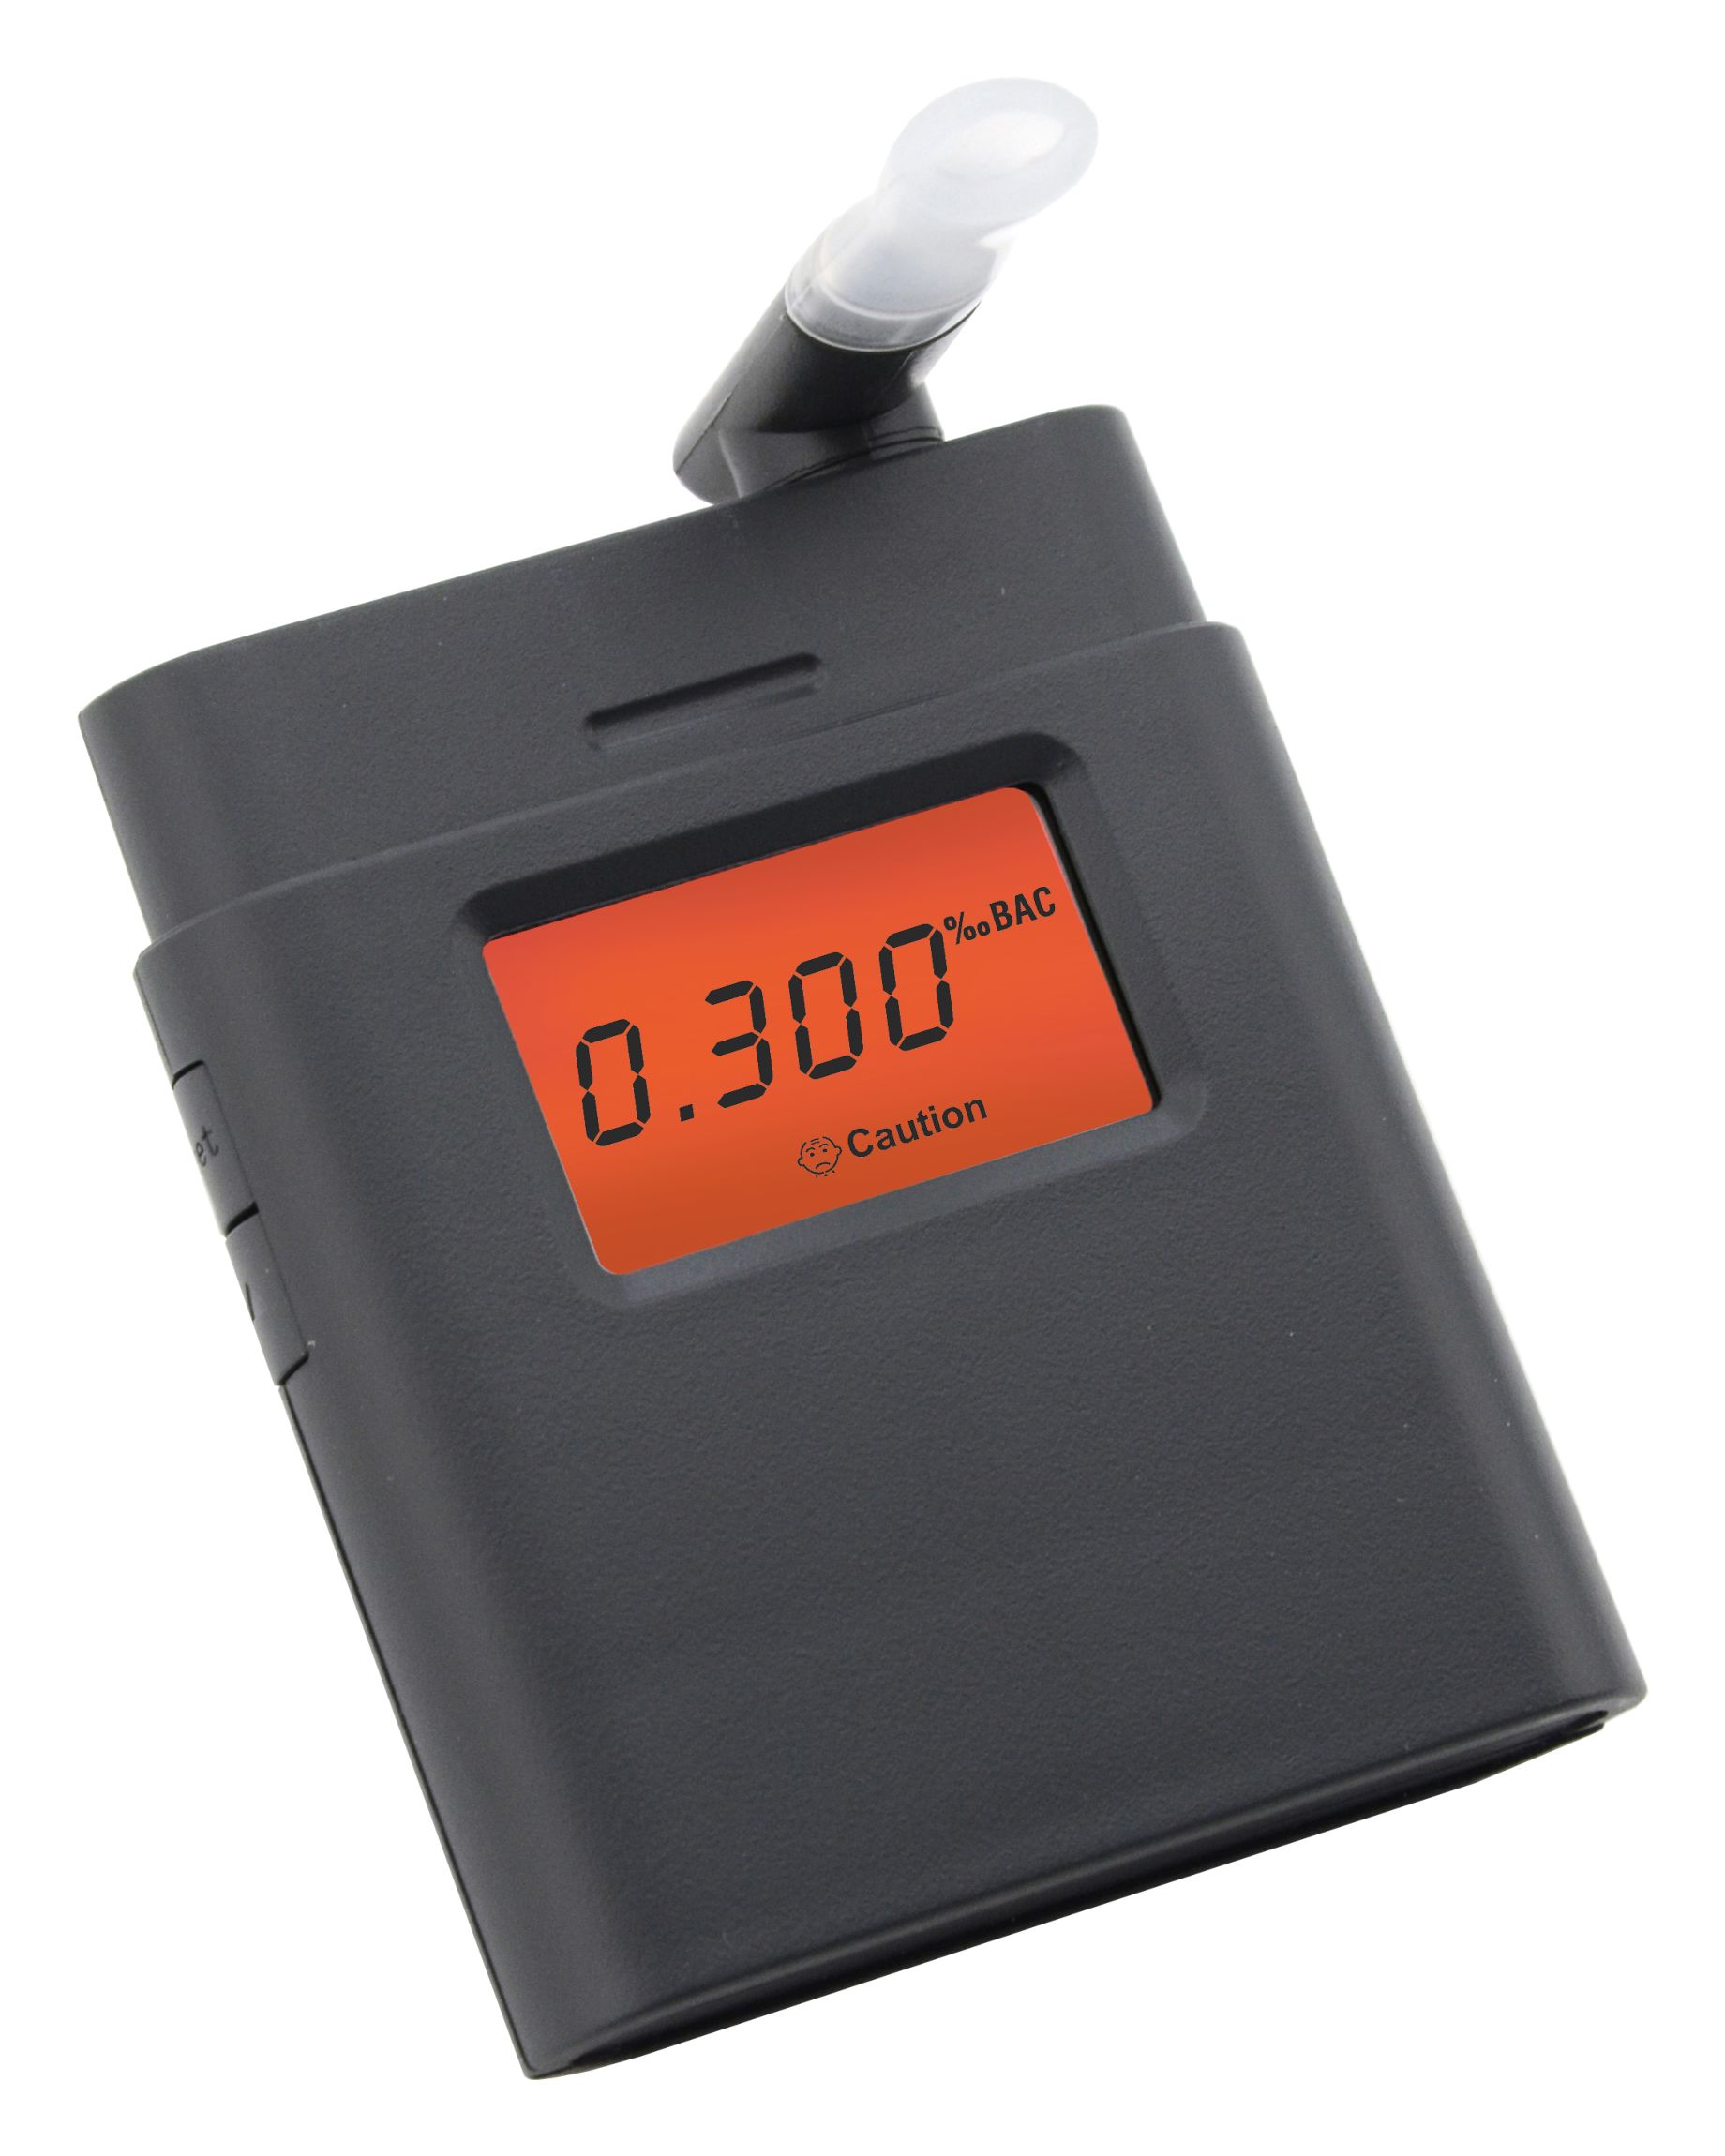 Alkohol tester BLACK, digitální Compass 01902